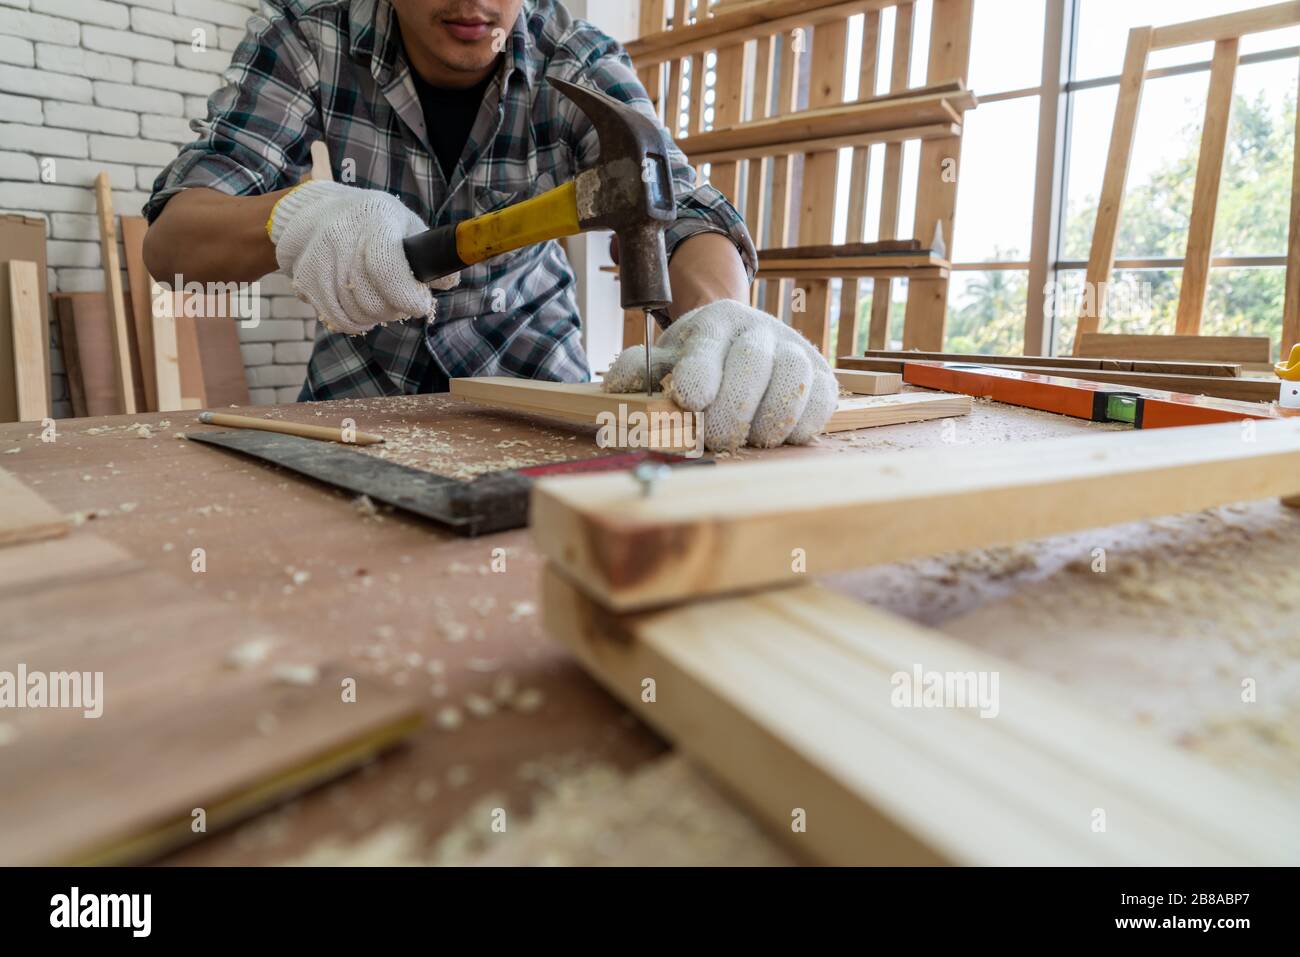 Carpintero trabajando en artesanía de madera en el taller para producir material de construcción o muebles de madera. El joven carpintero asiático utiliza herramientas profesionales para Foto de stock